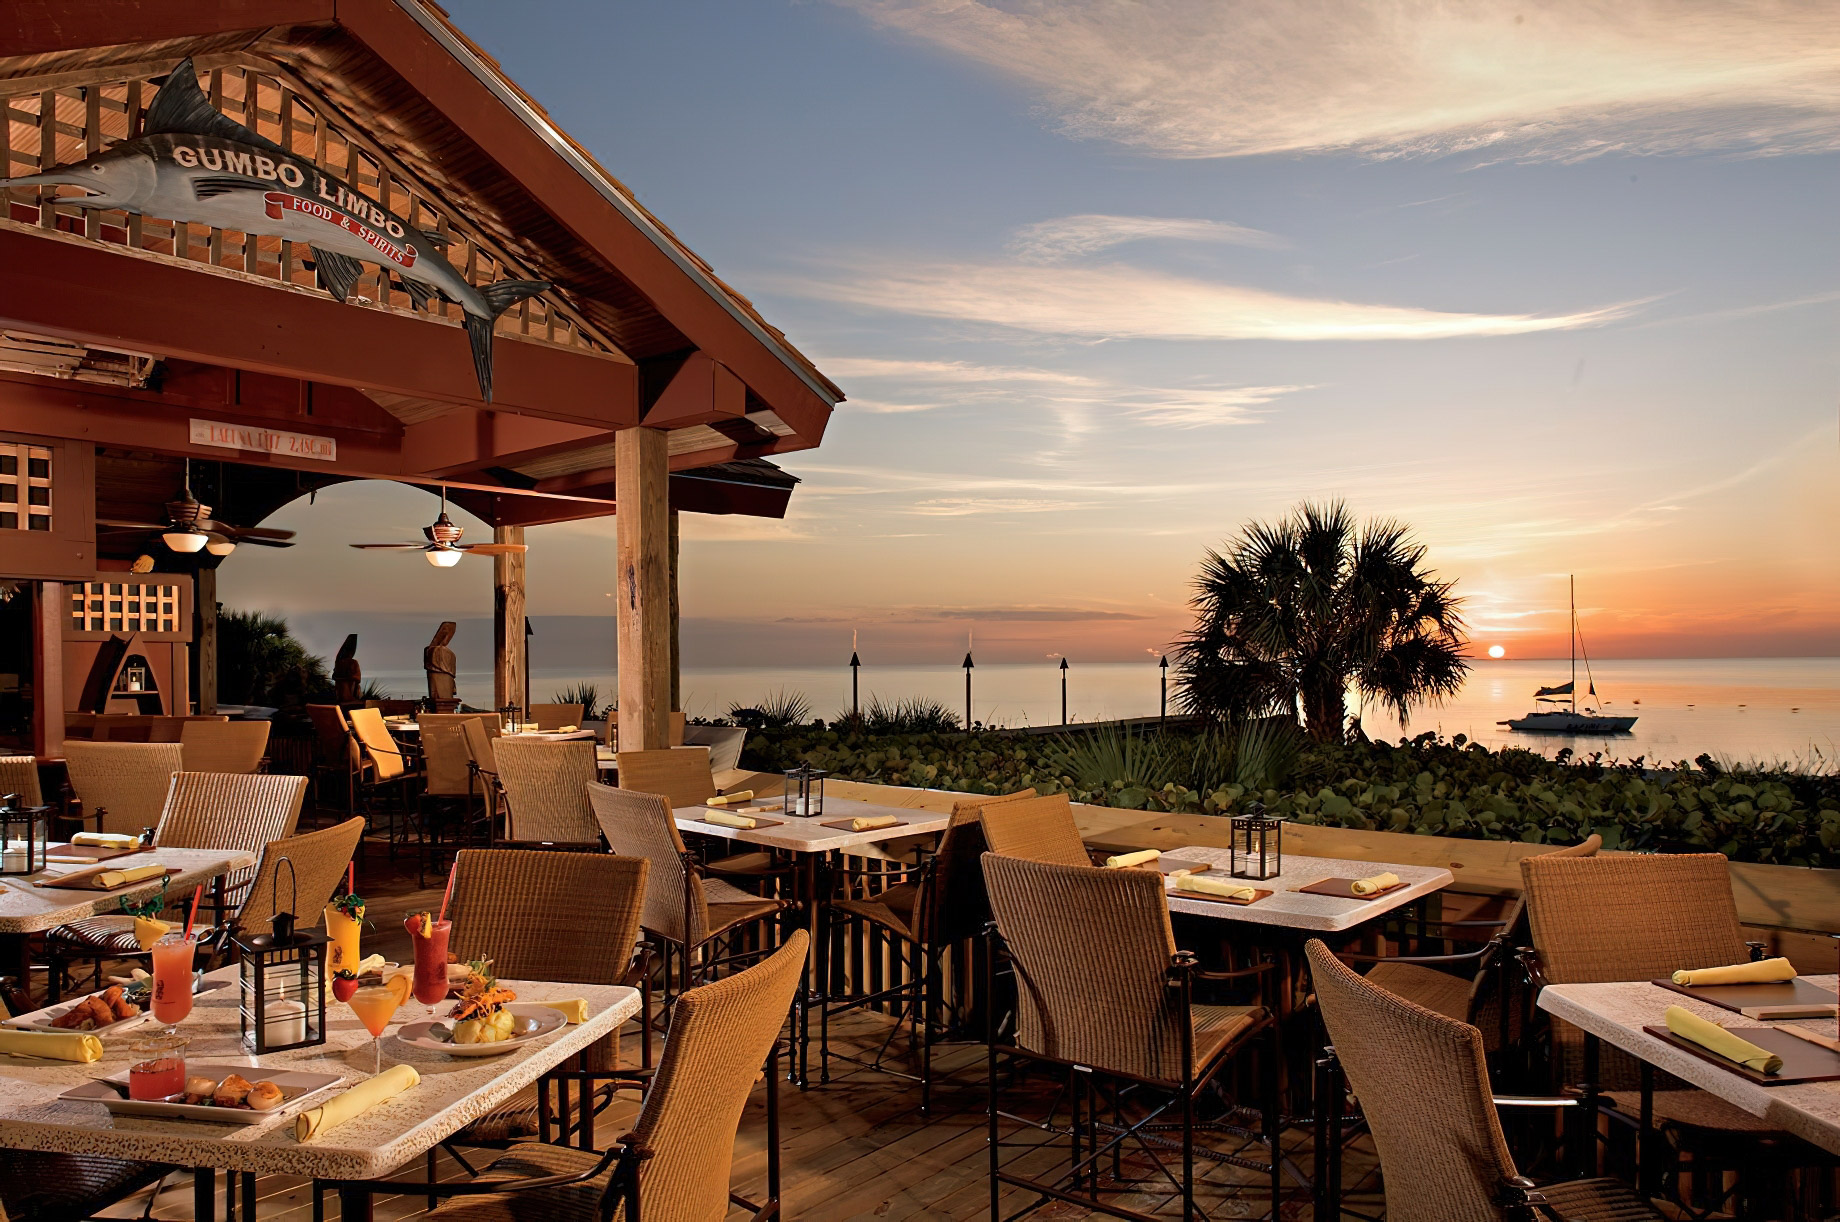 The Ritz-Carlton, Naples Resort – Naples, FL, USA – Gumbo Limbo Restaurant Terrace Sunset